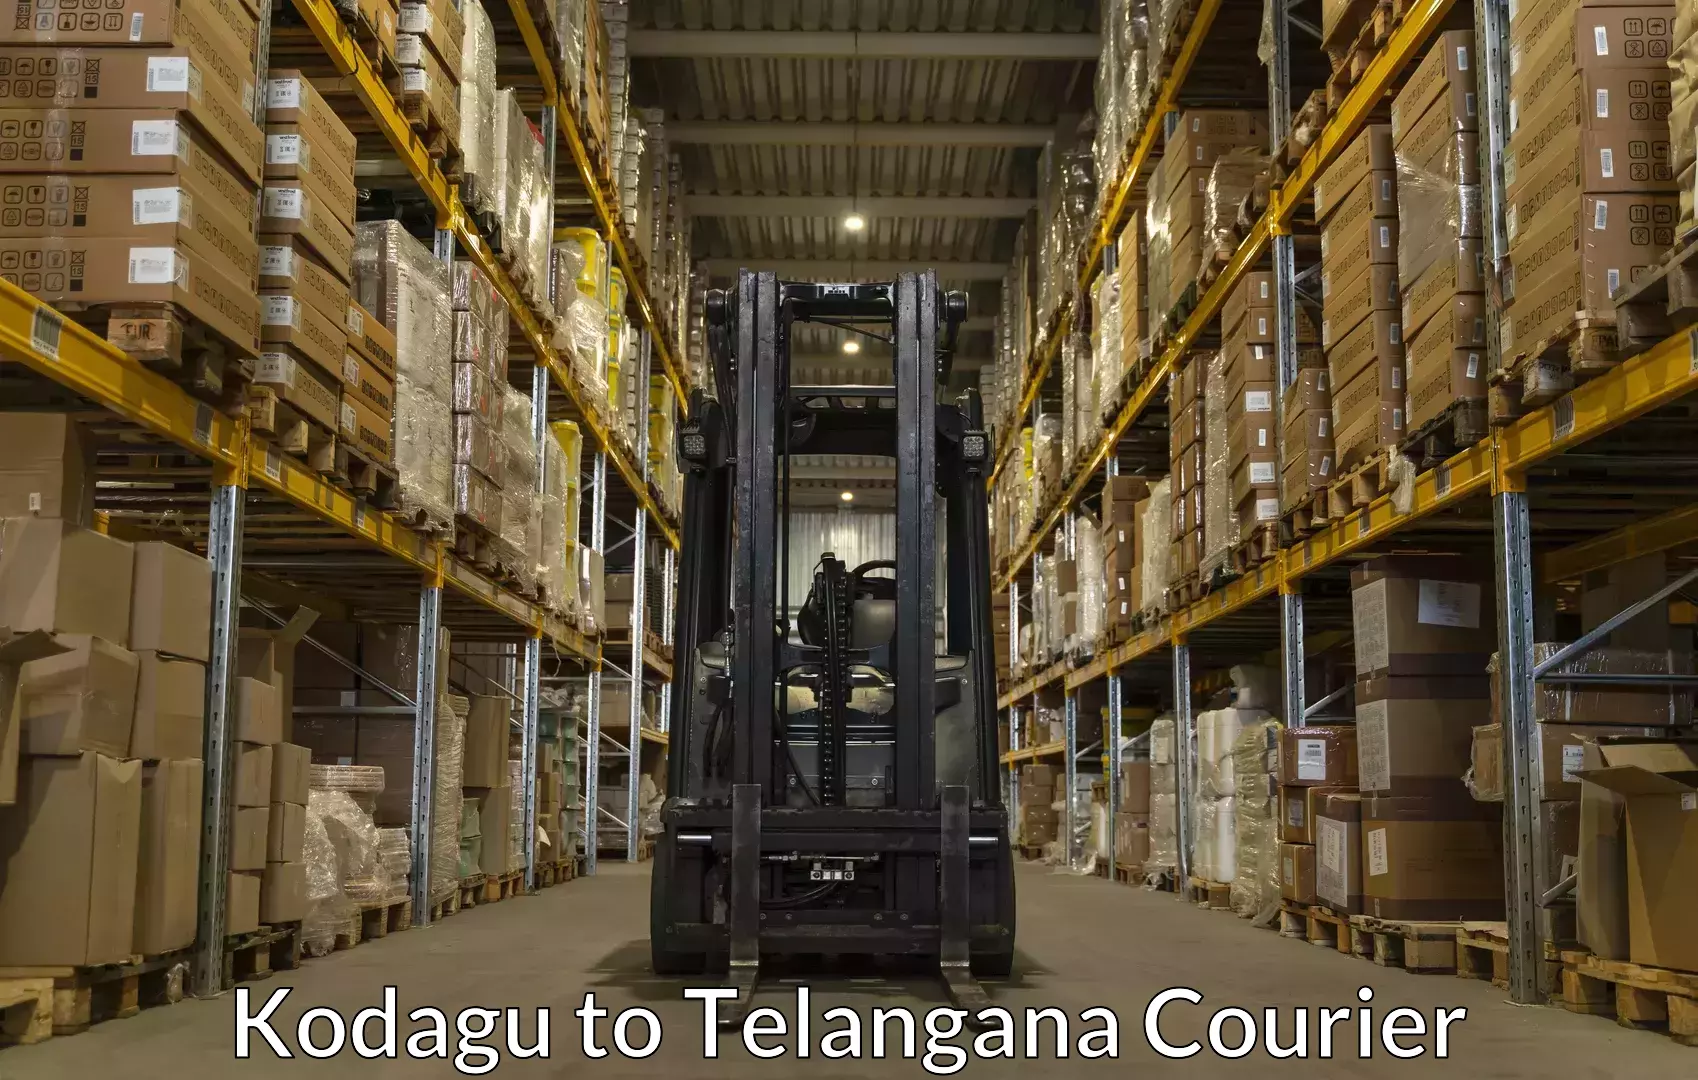 Luggage transport company Kodagu to Aswaraopeta